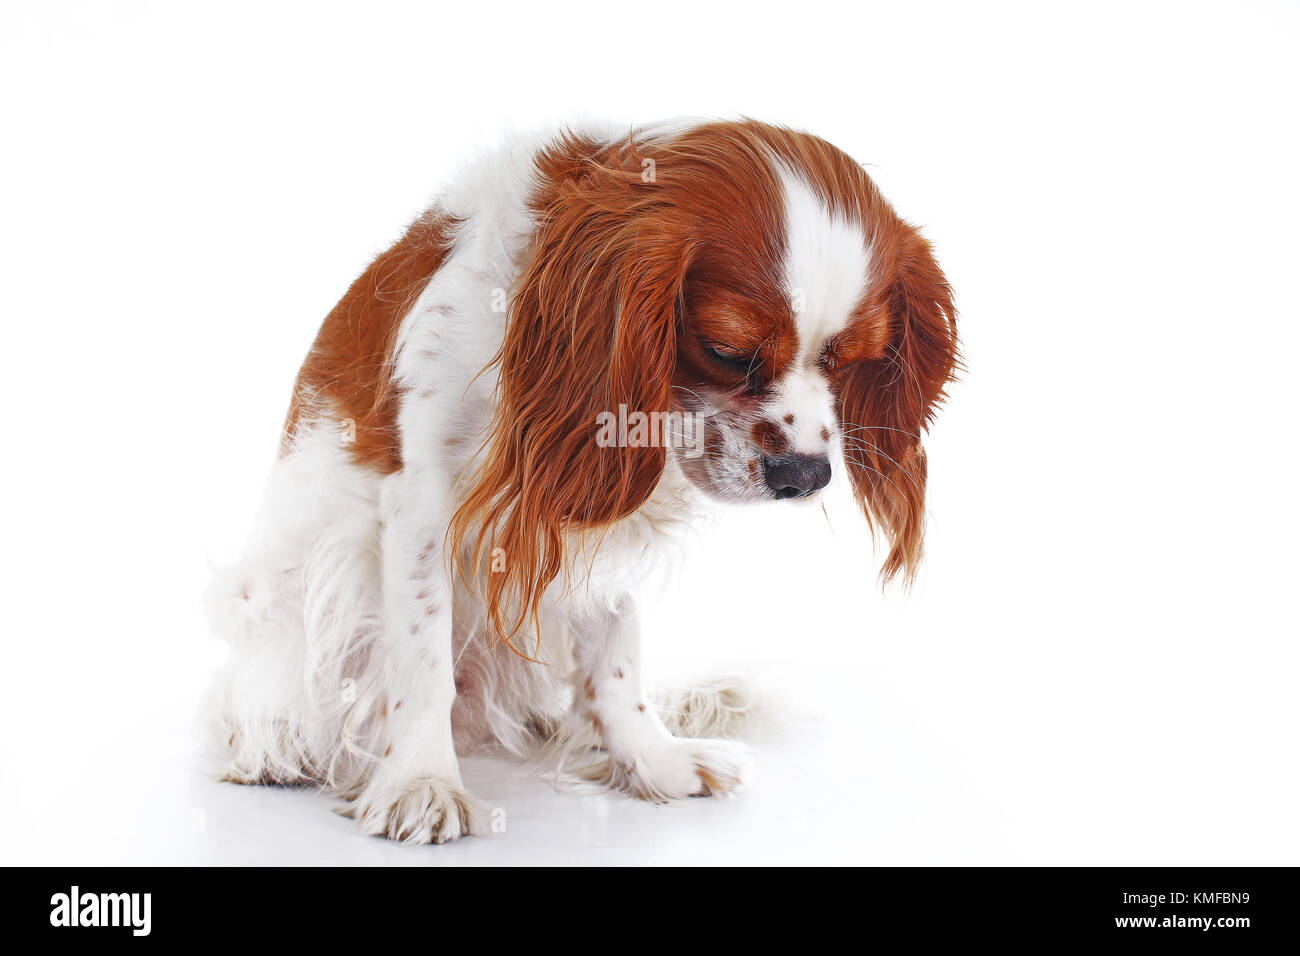 Süße traurige dogcavalier King Charles Spaniel hunde Welpen auf isolierten weißen studio Hintergrund. Hund Welpe mit traurigem Gesicht. Stockfoto